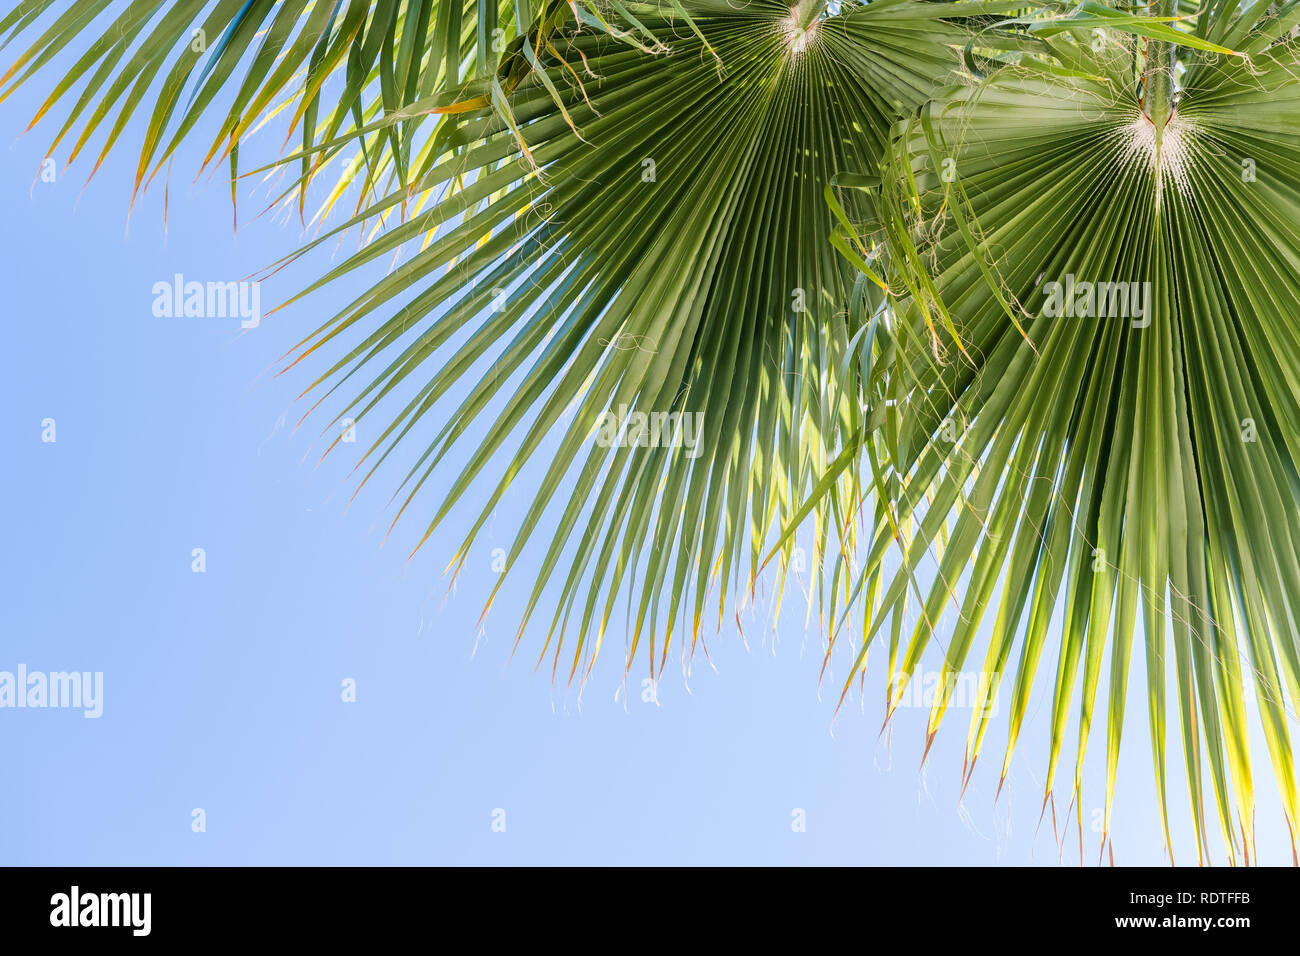 Ventilator Palmen (Washingtonia filifera) lässt auf einen blauen Himmel Hintergrund, Kalifornien Stockfoto